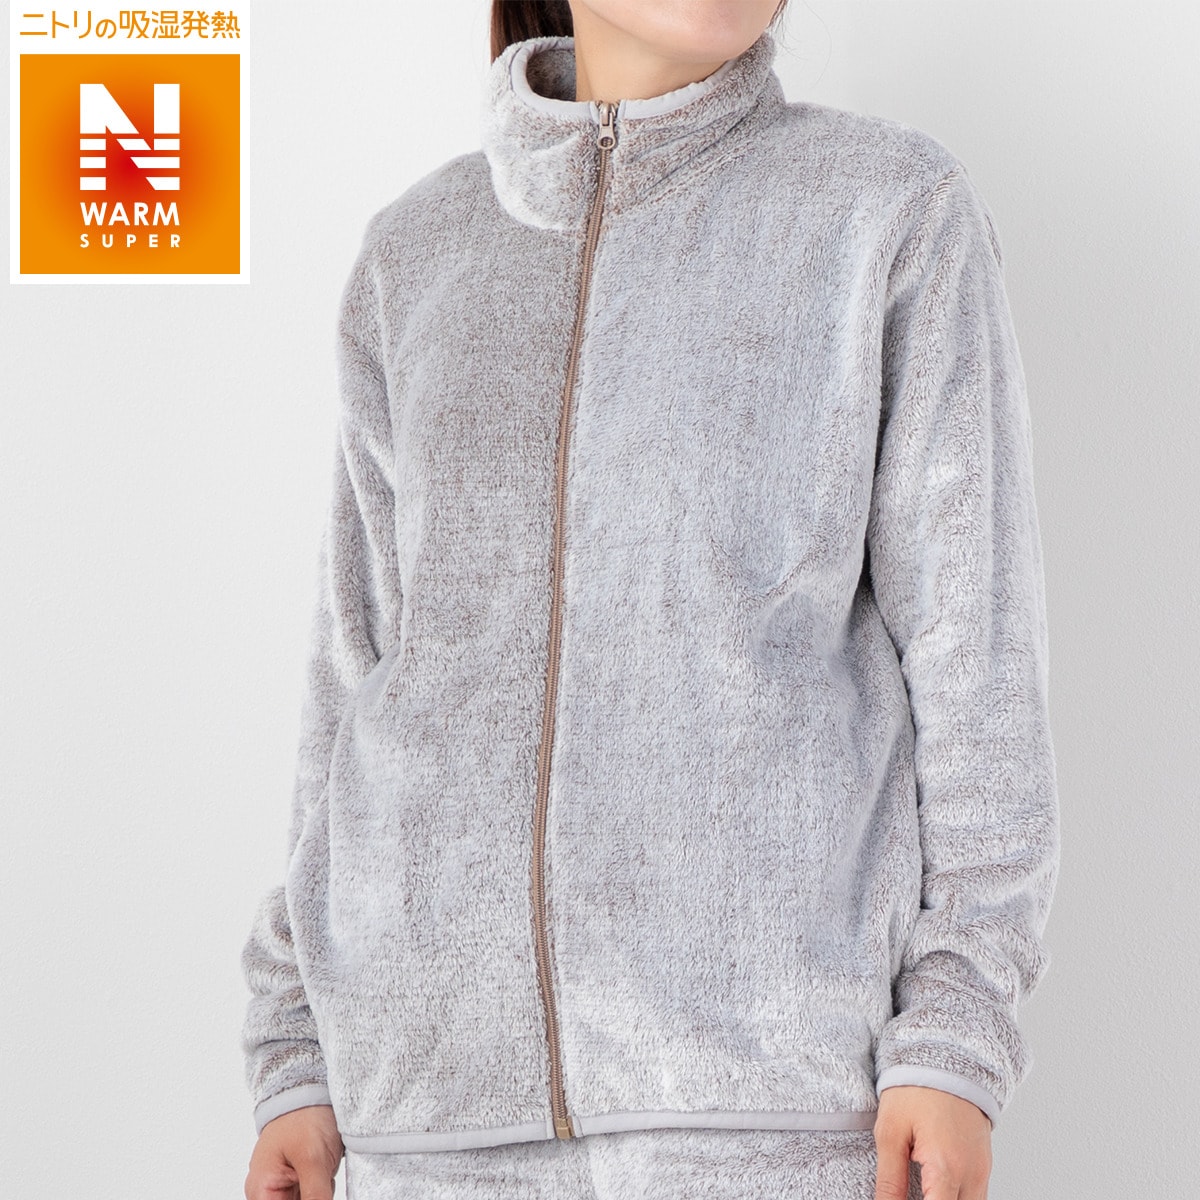 ニトリの着る毛布ジップジャケット(NWSP 031BR)   【1年保証】(布団・寝具)